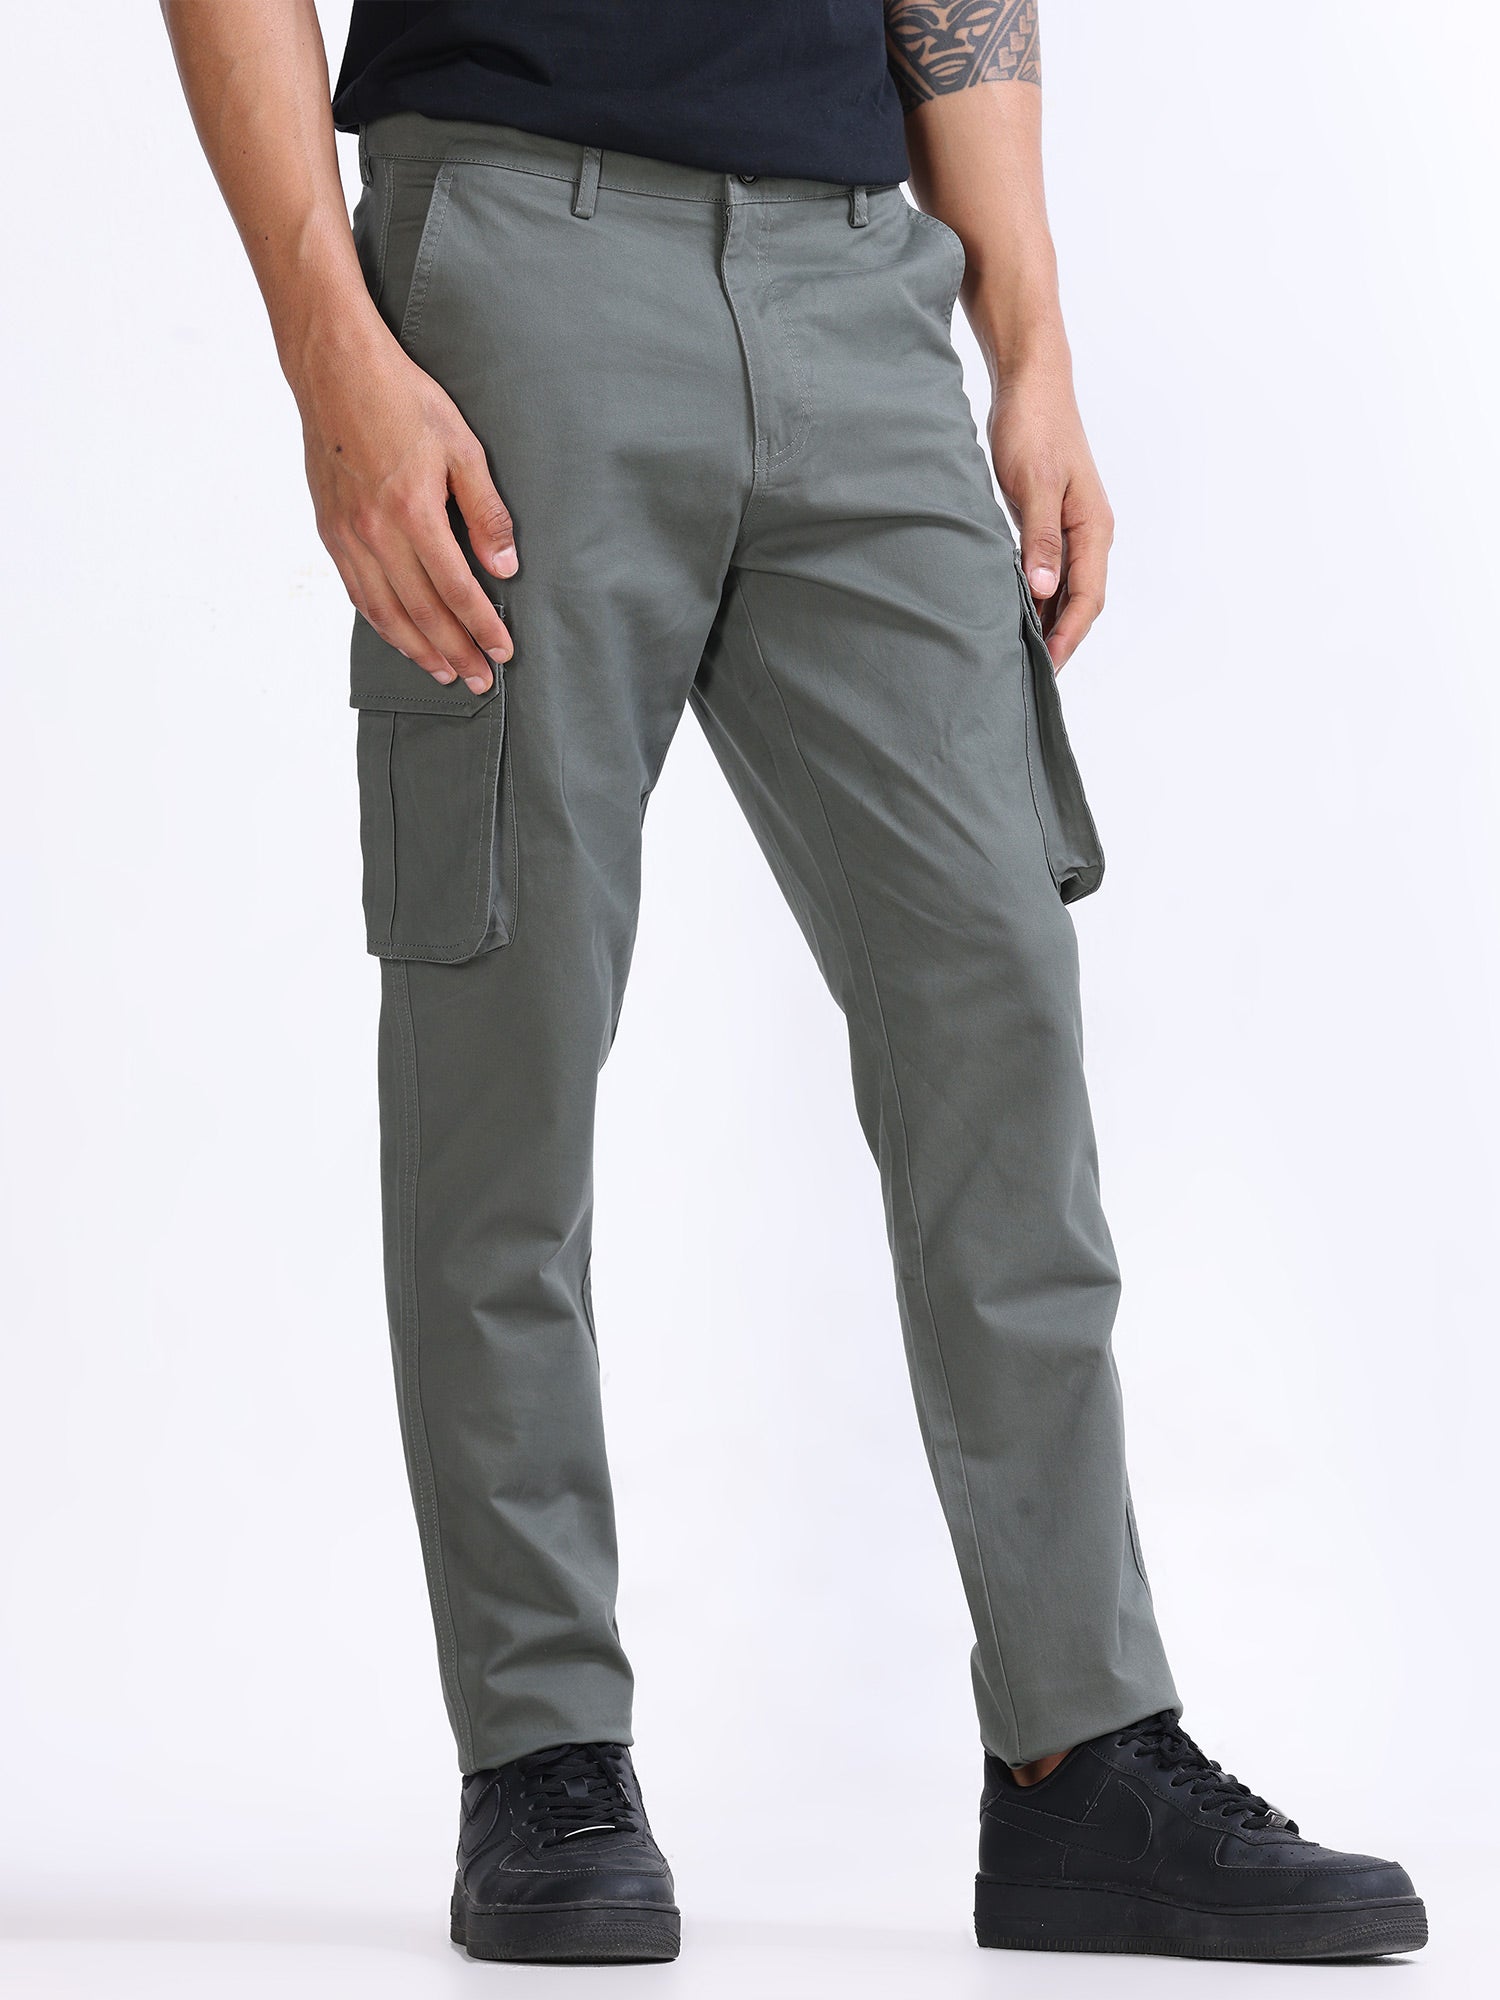 DAZY Men's Green Solid Cargo Pants